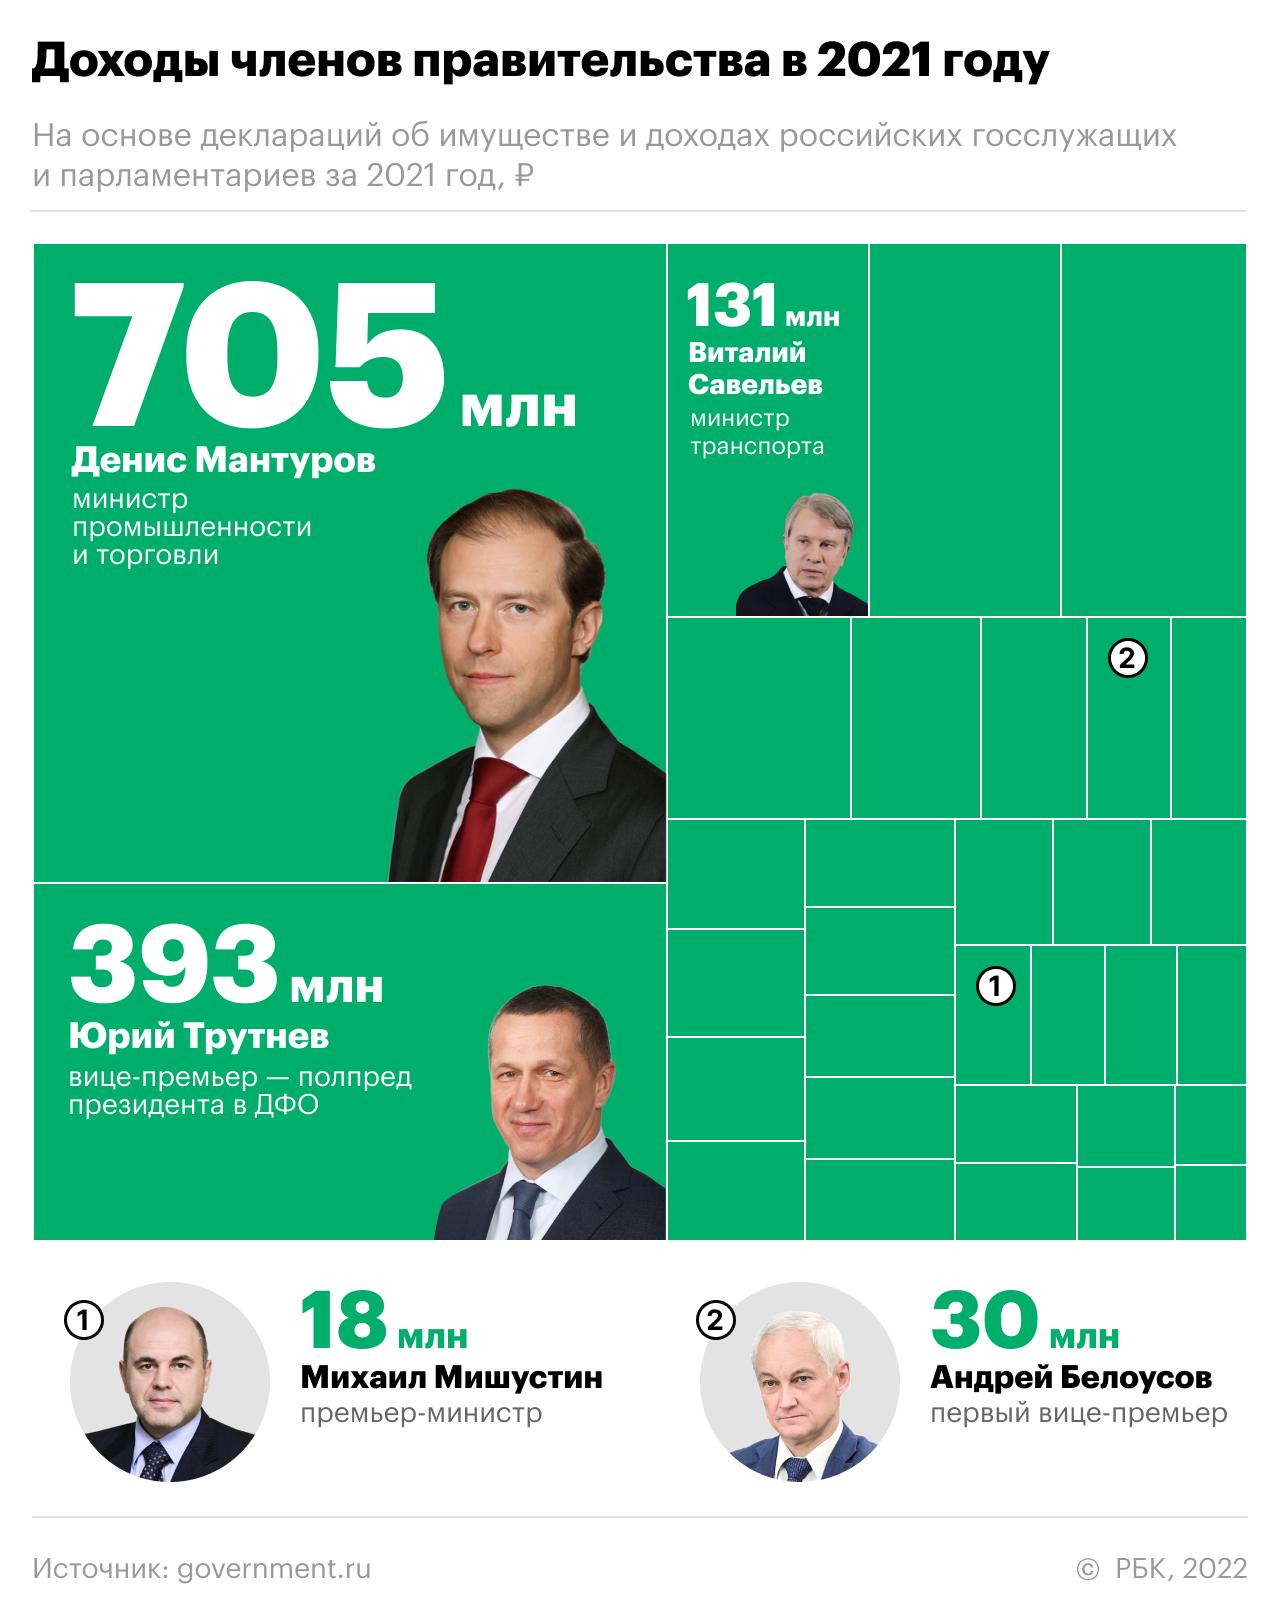 Самый богатый министр правительства заработал за год 705 млн руб.